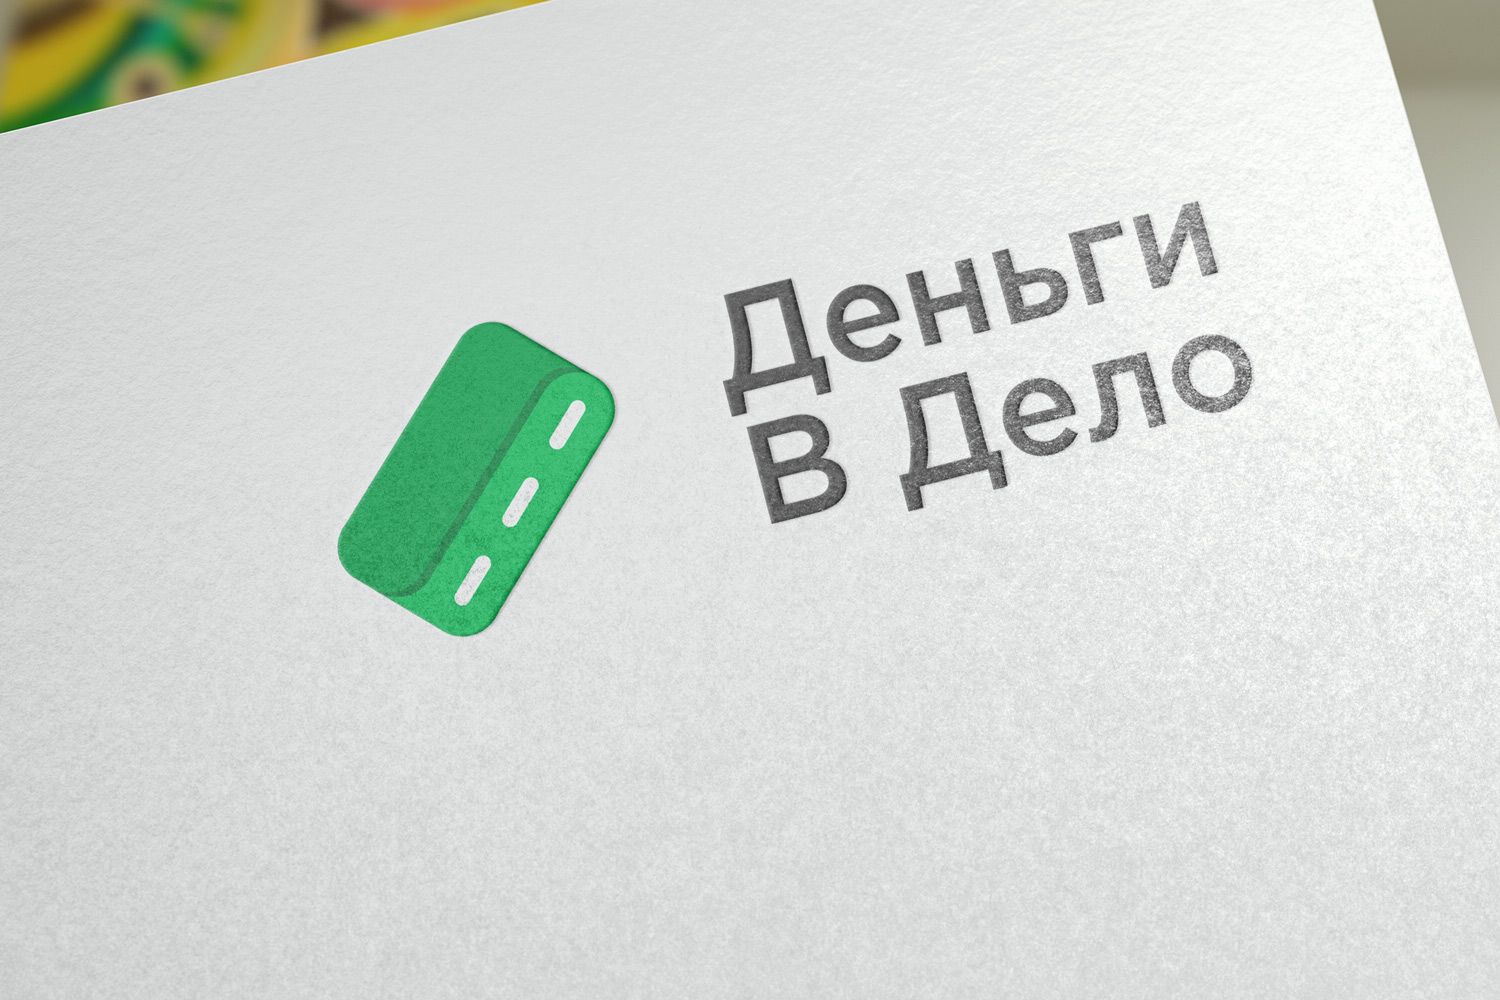 Логотип для Деньги в дело - дизайнер En_Joy